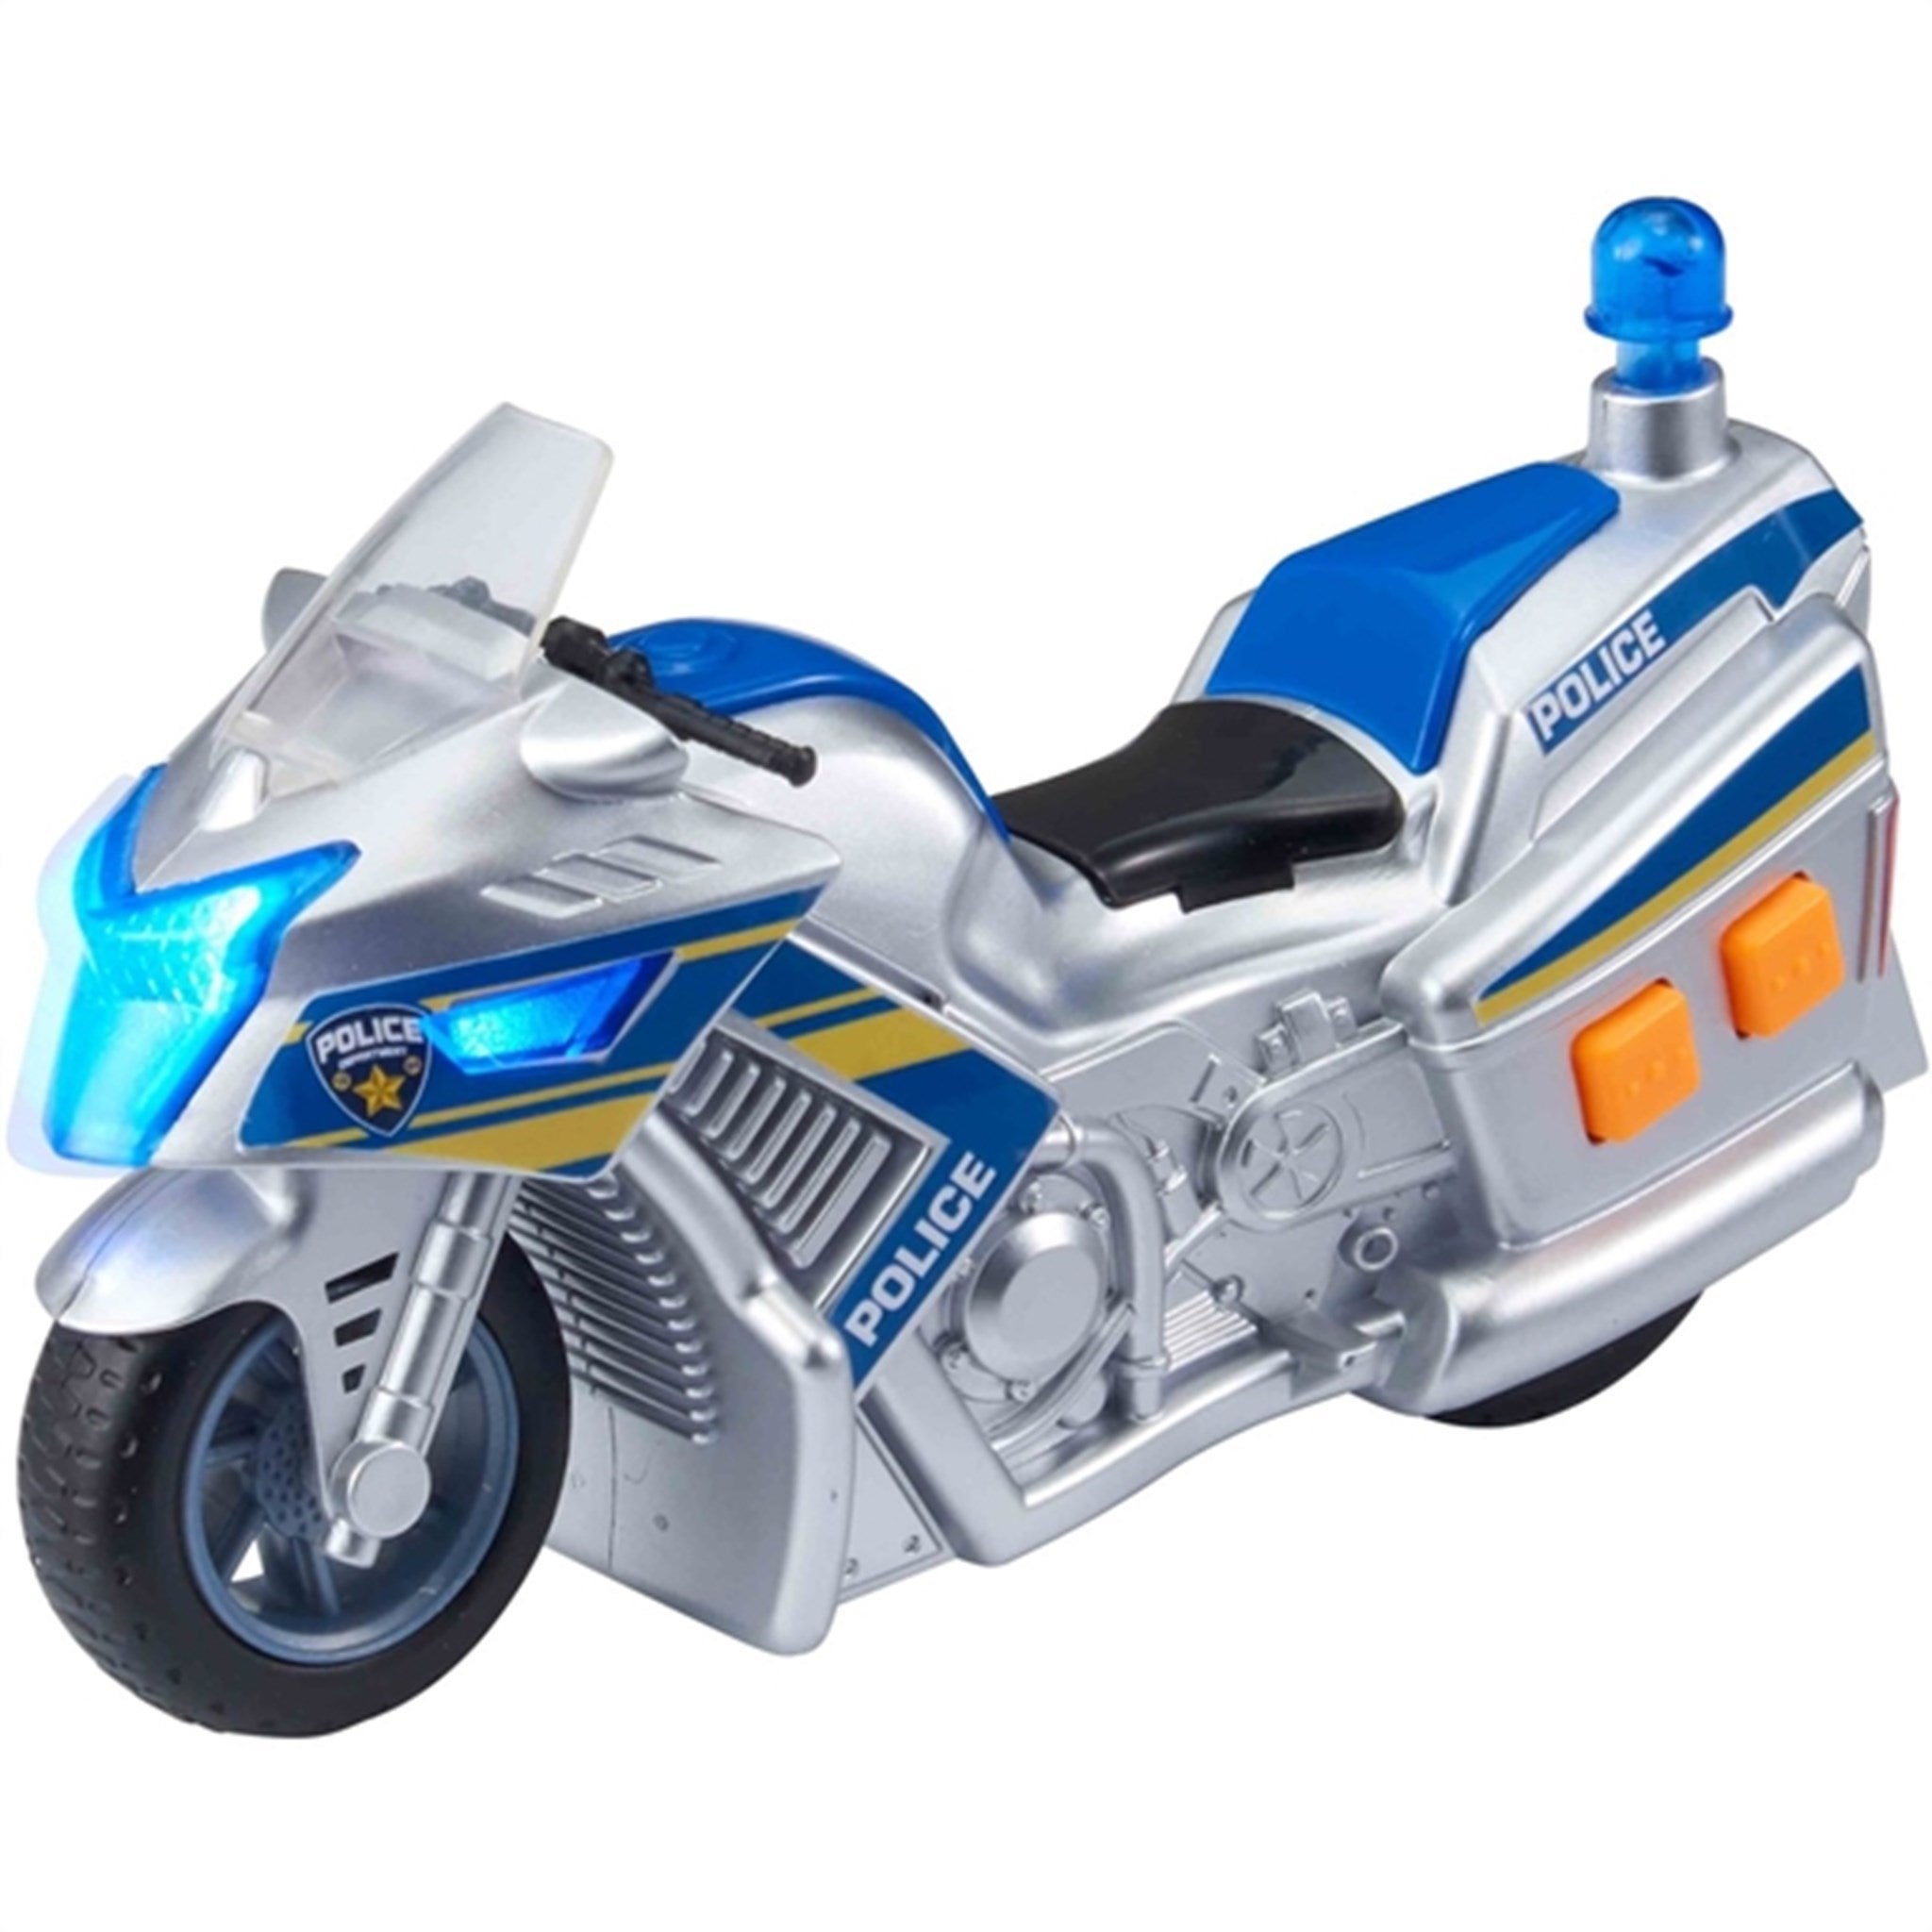 Teamsterz Small L&S Police Motor Bike